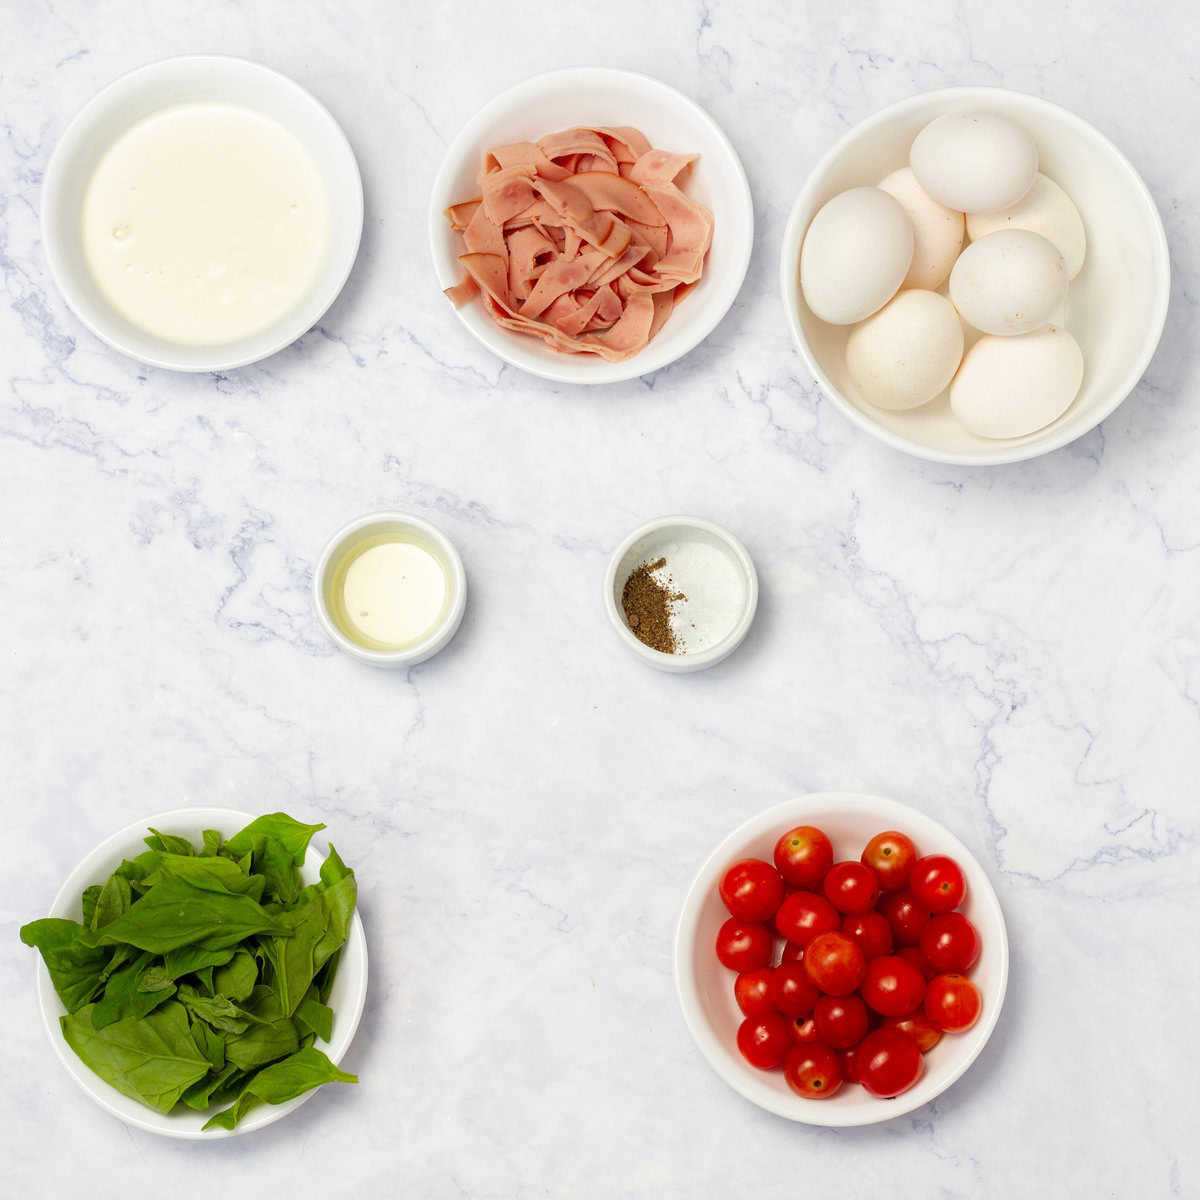 Ingredients of eggs, turkey ham, veggies, and seasonings in separate dishes. 